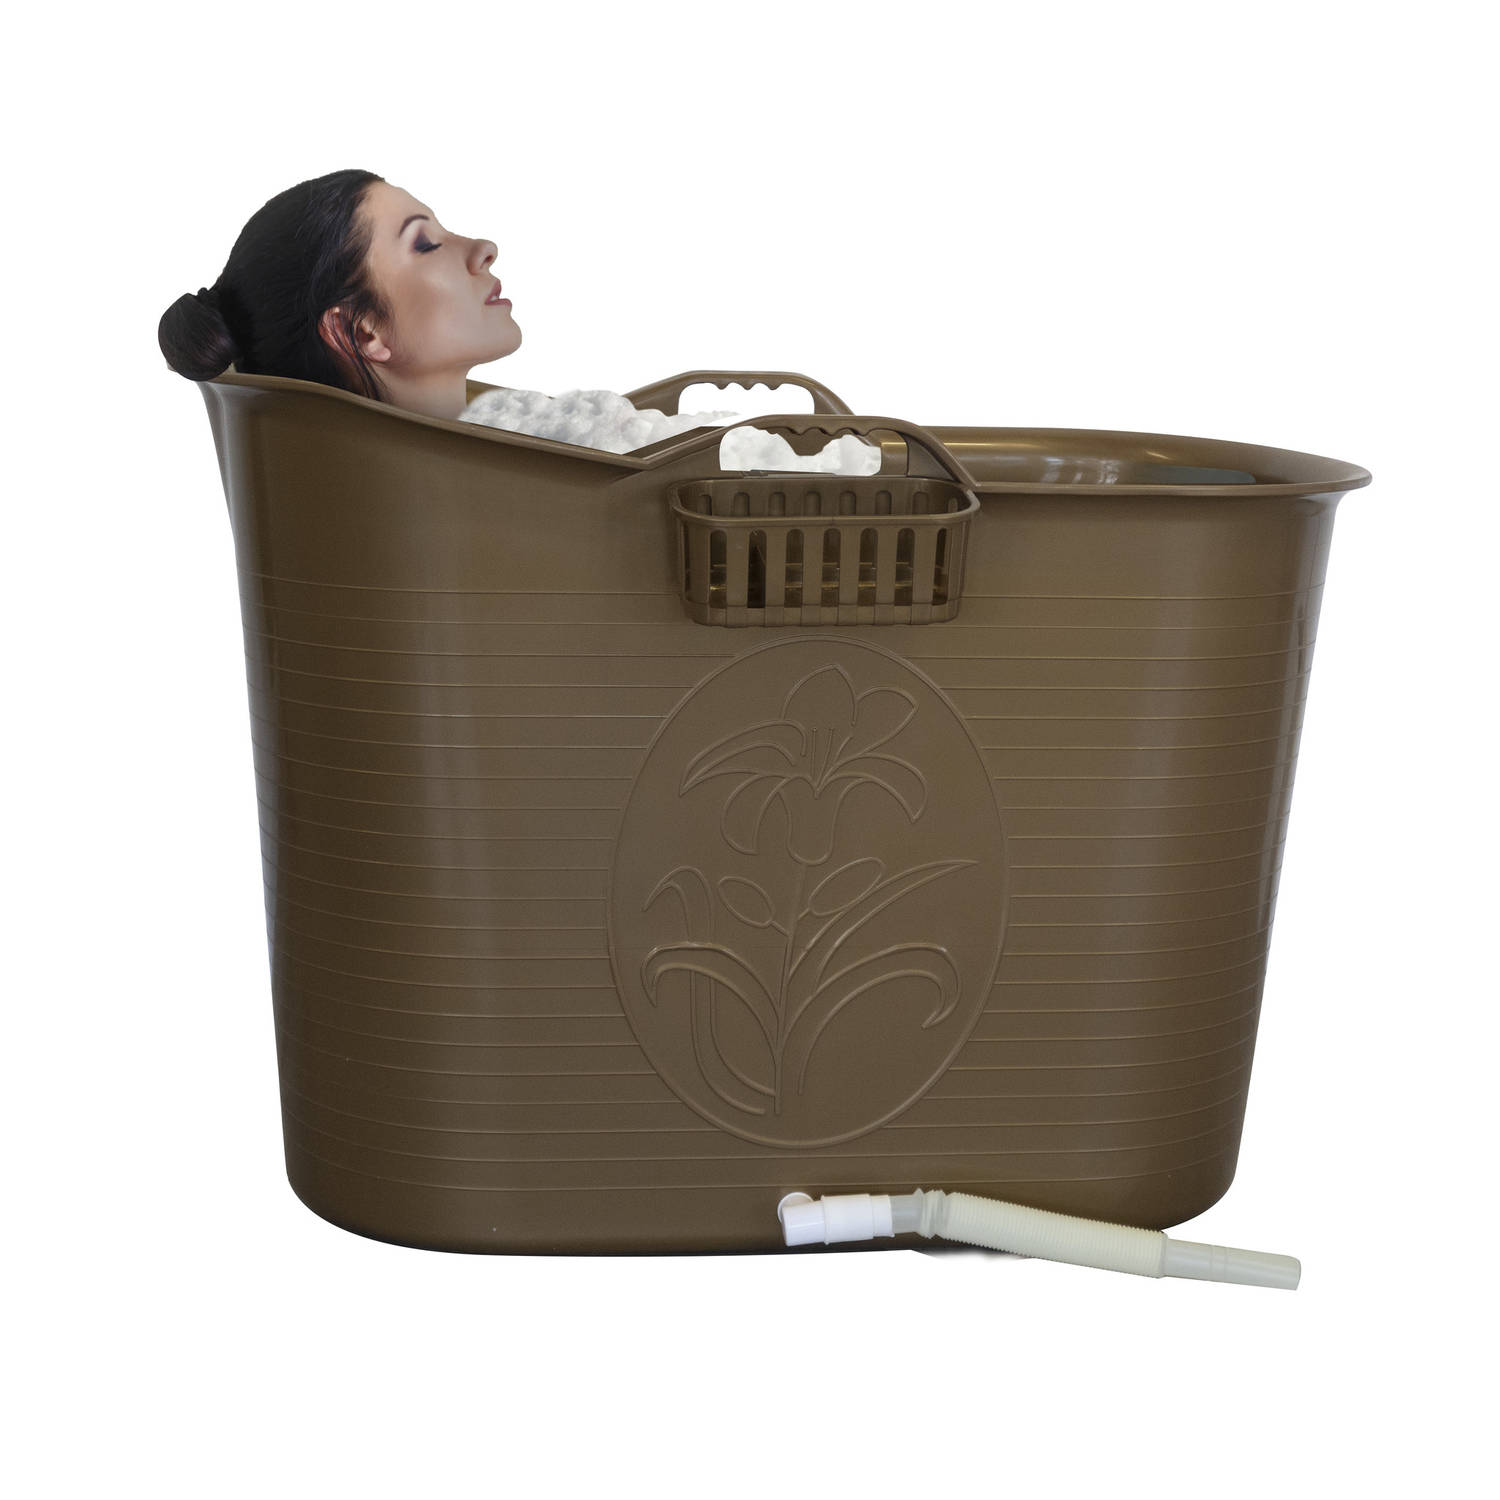 LIFEBATH - Zitbad Nancy - Bath bucket - Mobiele badkuip - 200L - Voor volwassenen - Goud